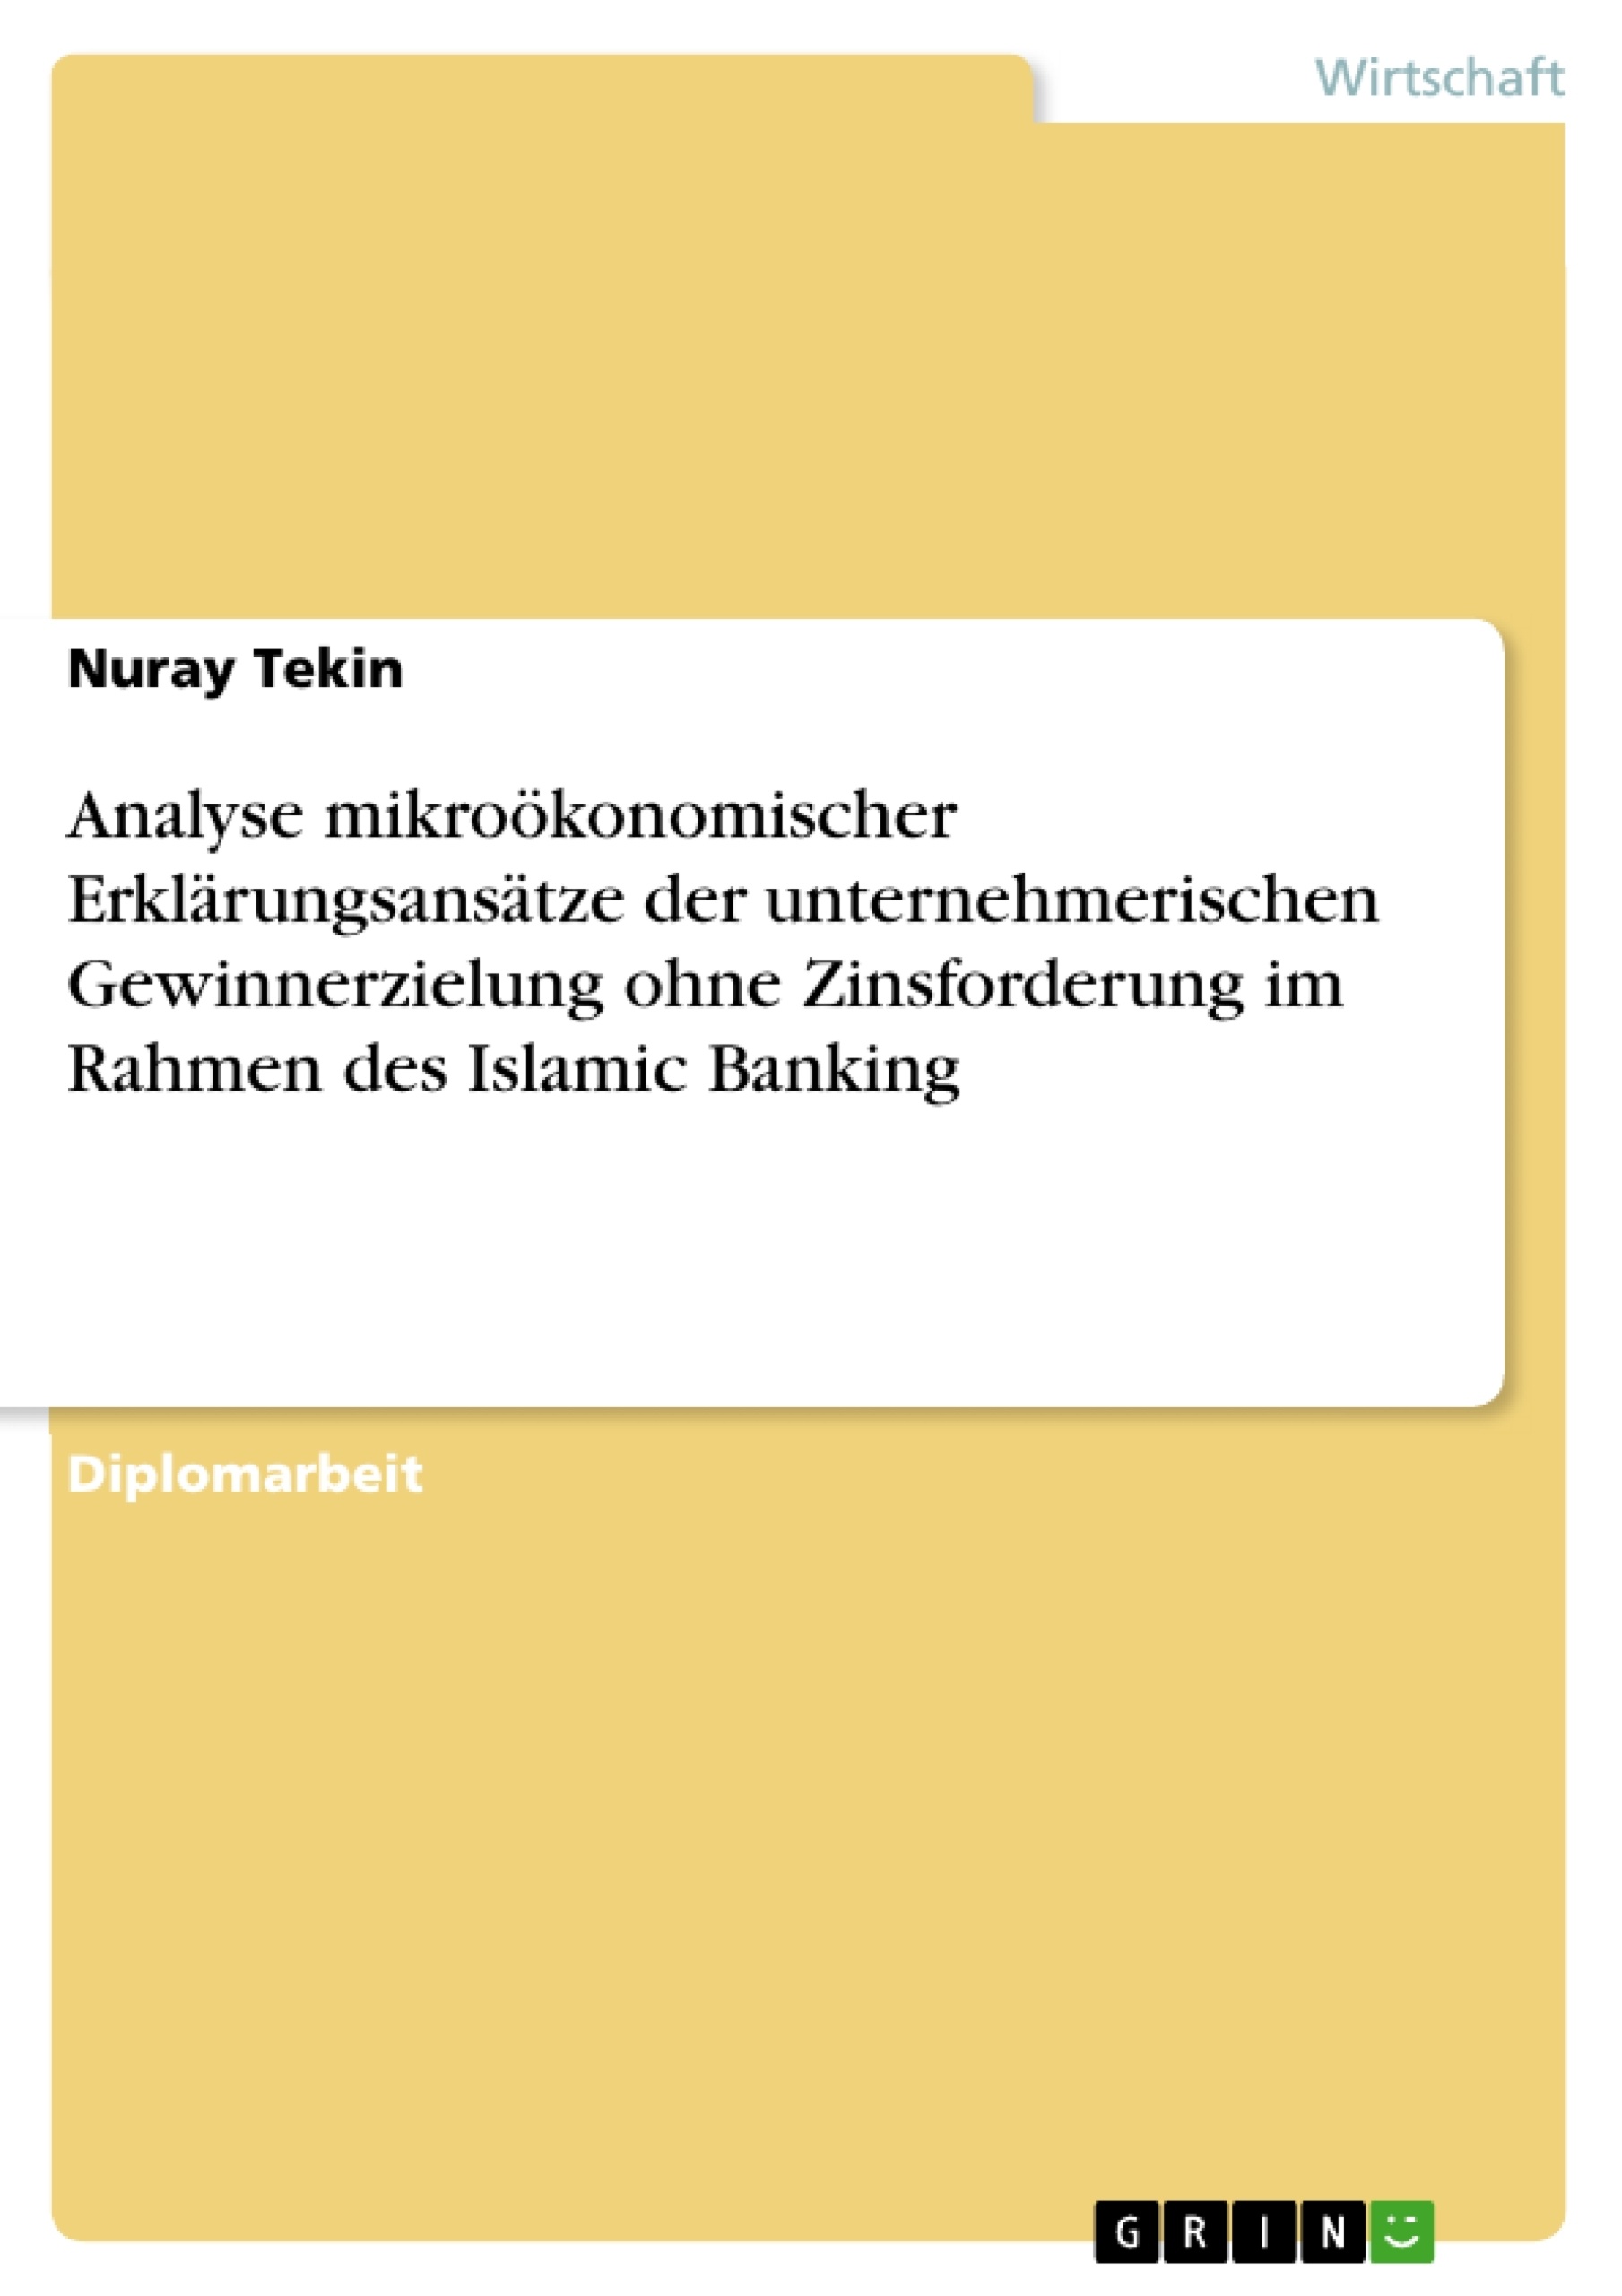 Title: Analyse mikroökonomischer Erklärungsansätze der unternehmerischen Gewinnerzielung ohne Zinsforderung im Rahmen des Islamic Banking